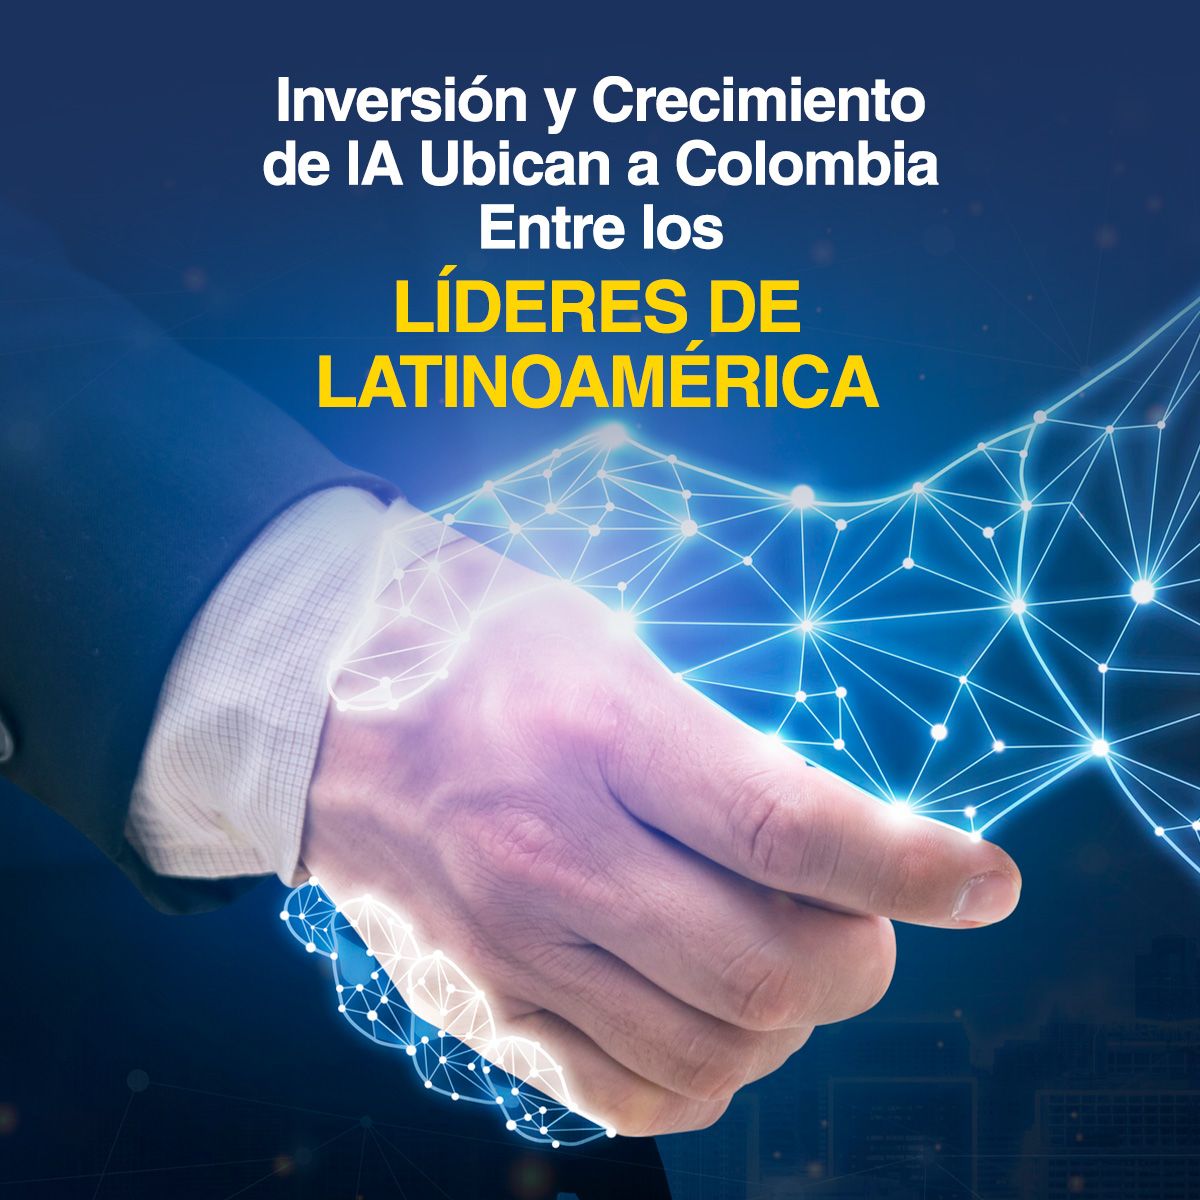 Inversión y Crecimiento de lA Ubican a Colombia Entre los Líderes de Latinoamérica